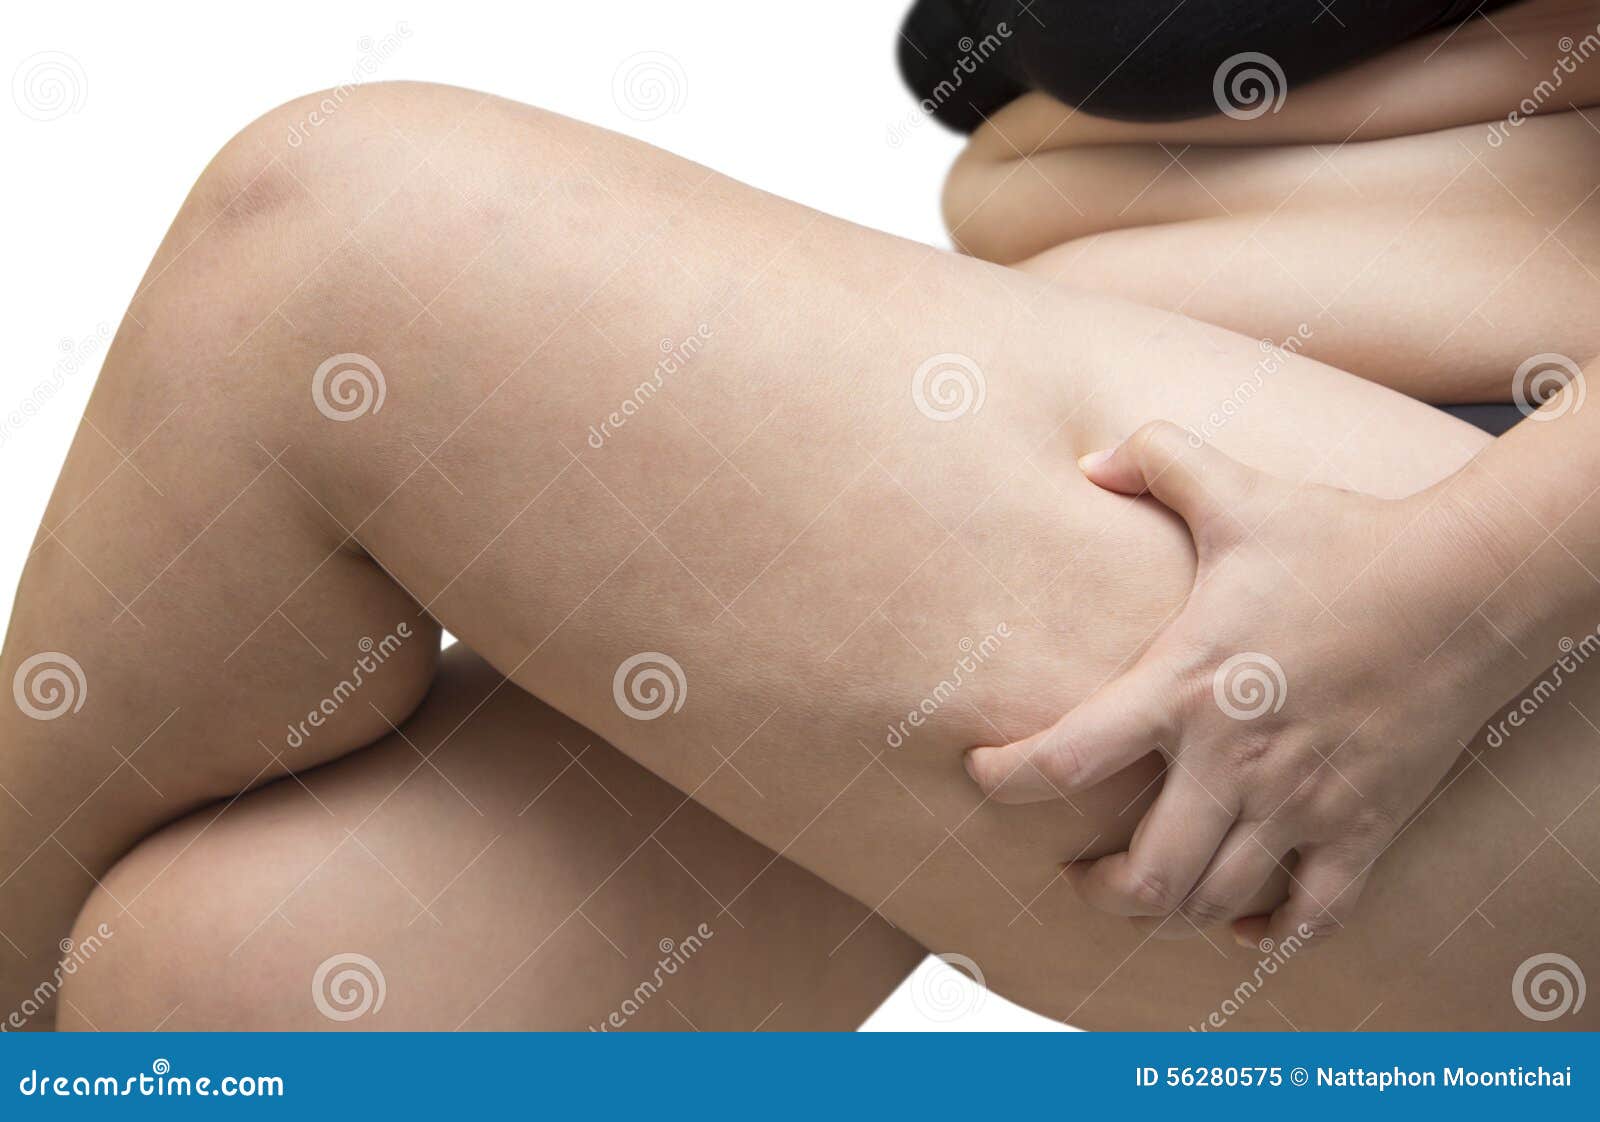 Woman Squeeze Leg Fat Wearing Black Underwear Bra on White